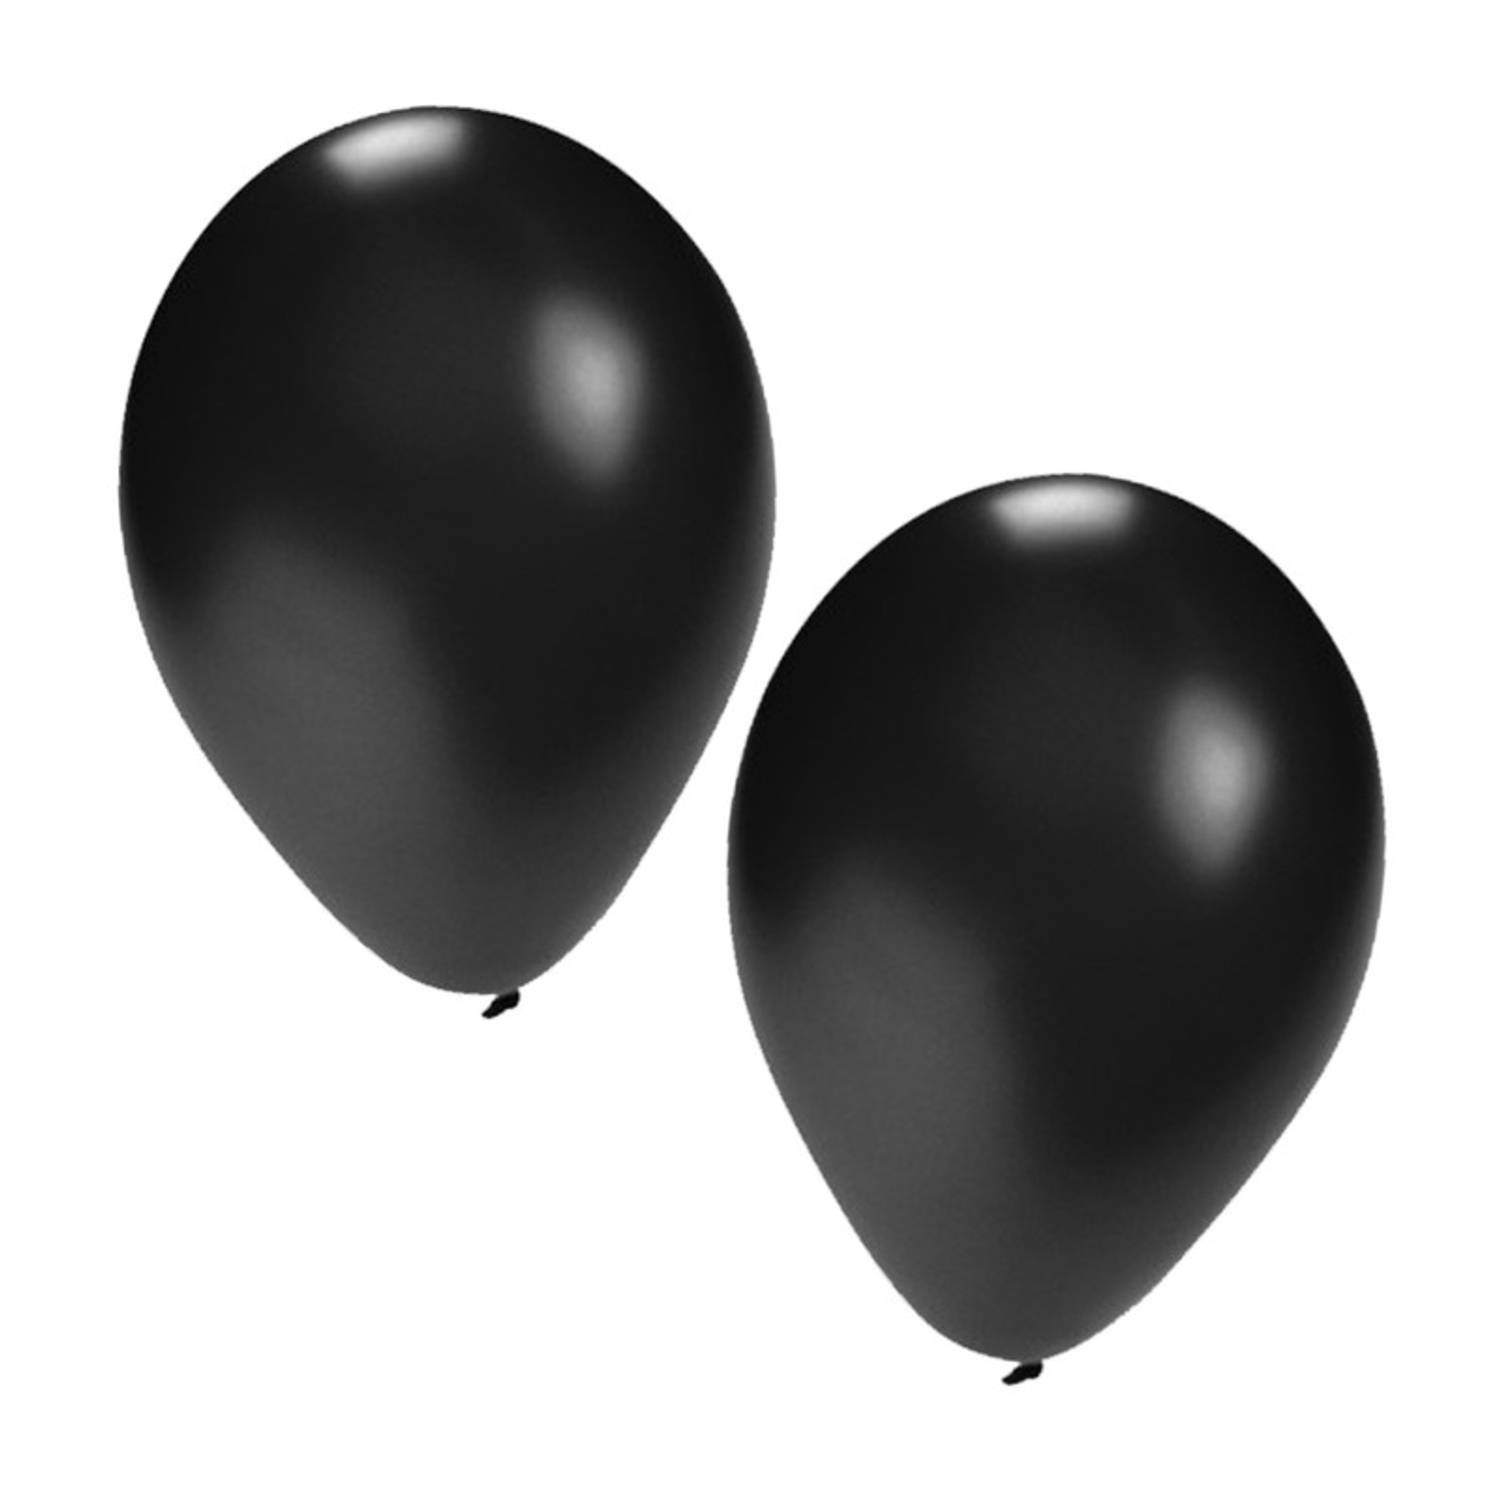 stof in de ogen gooien te rechtvaardigen Ontwaken Witte en zwarte ballonnen 50 stuks - Ballonnen | Blokker